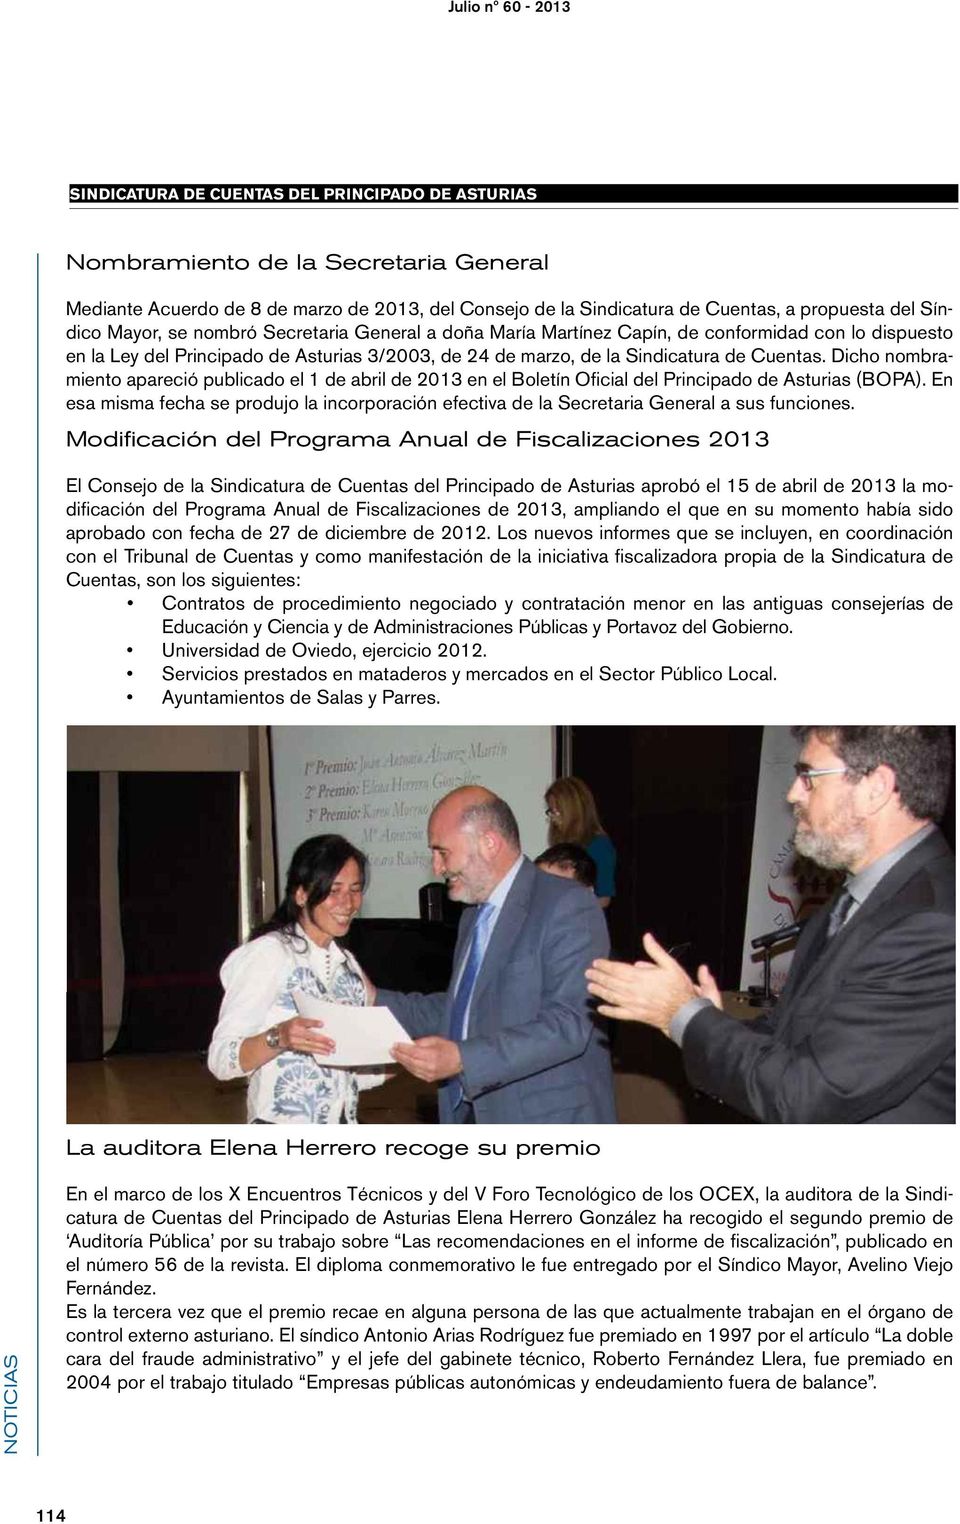 Dicho nombramiento apareció publicado el 1 de abril de 2013 en el Boletín Oficial del Principado de Asturias (BOPA).